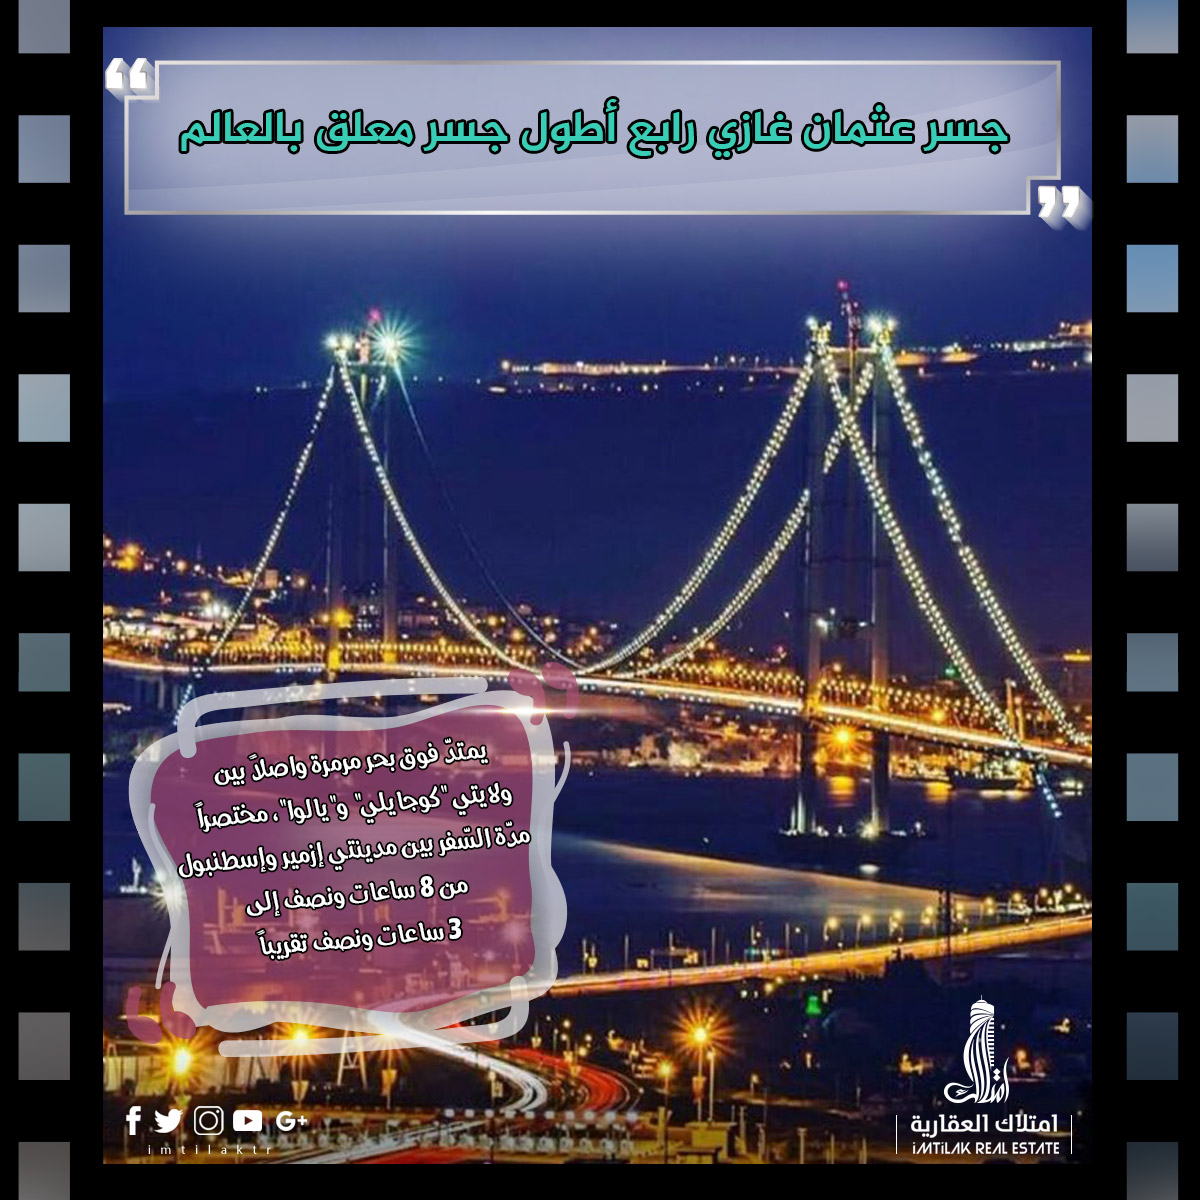 جسر عثمان غازي.jpg